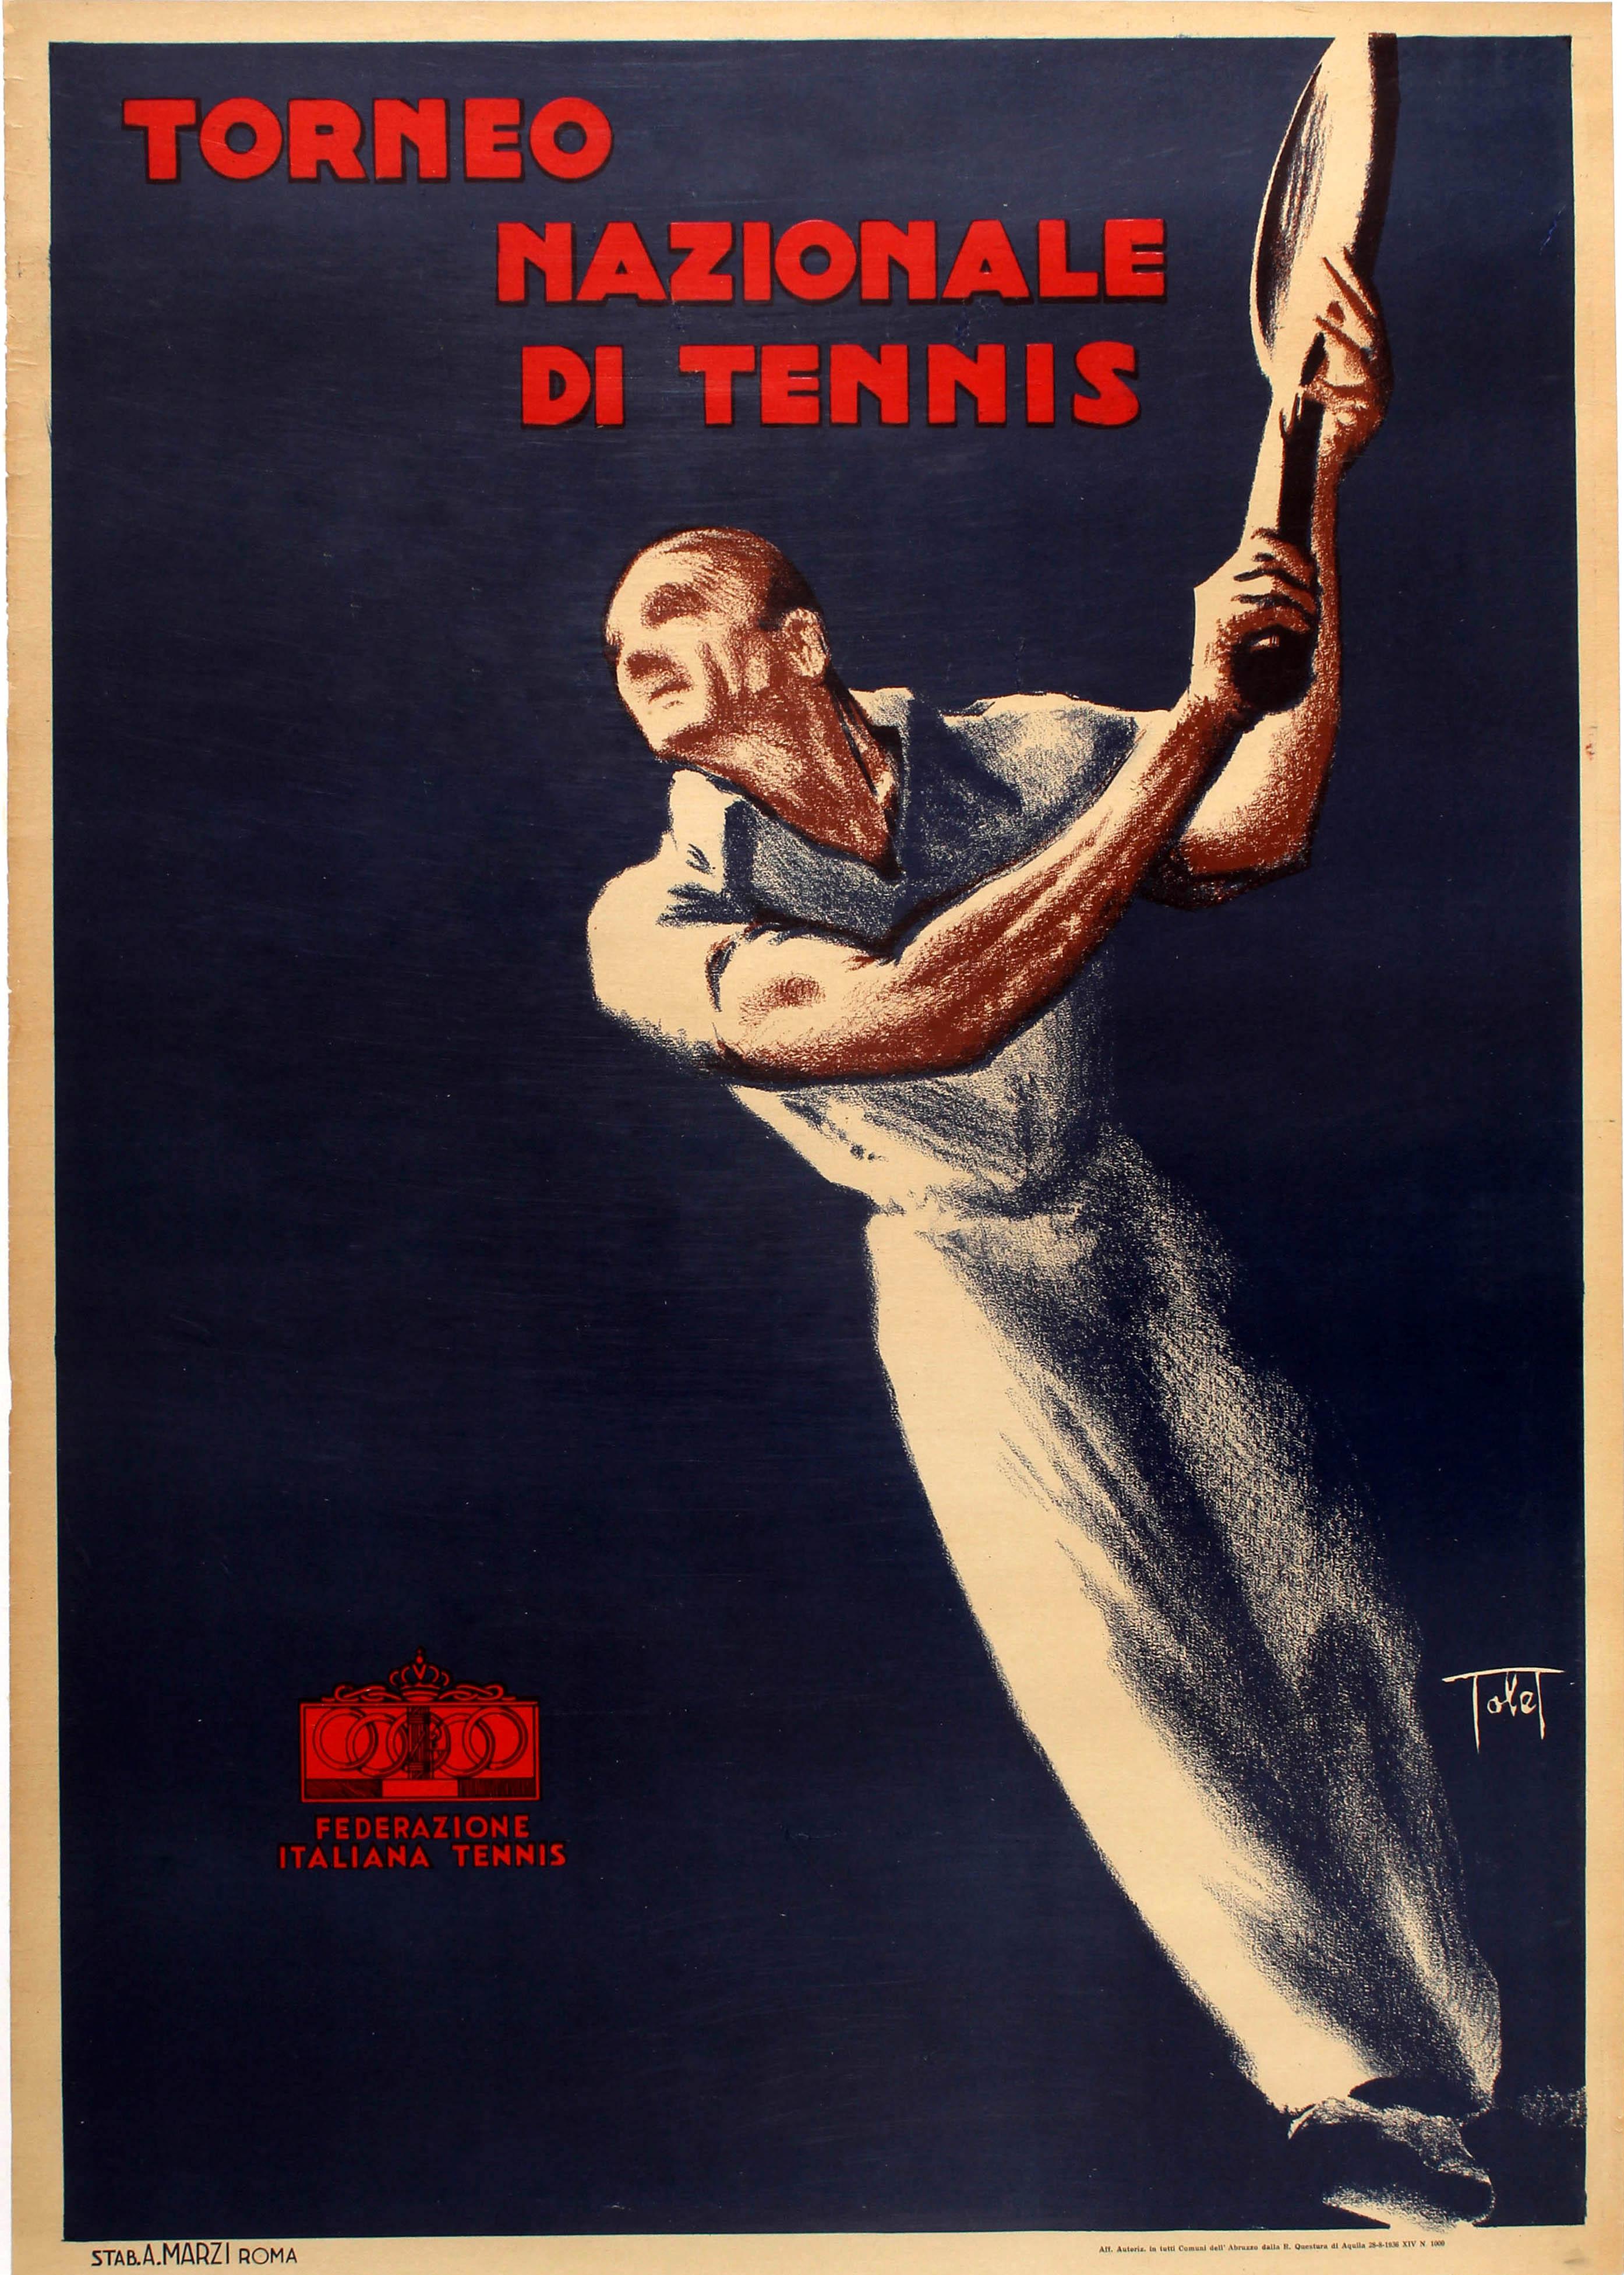 Affiche rétro originale du tournoi de tennis Torneo Nazionale Di Tennis, Italie, événement sportif 